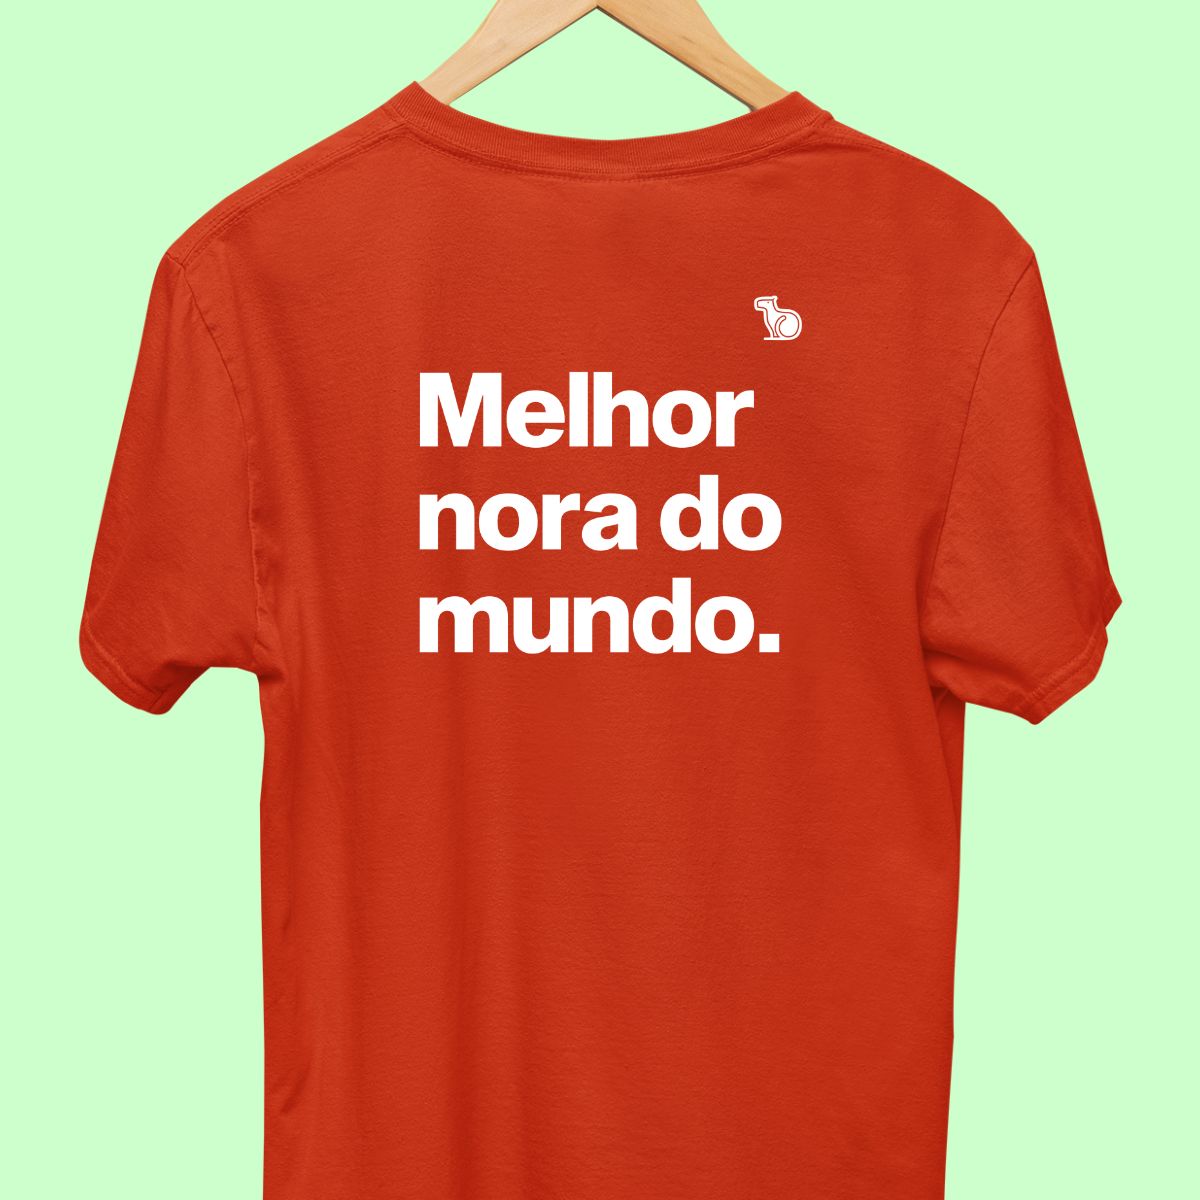 Camiseta com a frase "Melhor nora do mundo." masculina vermelha.